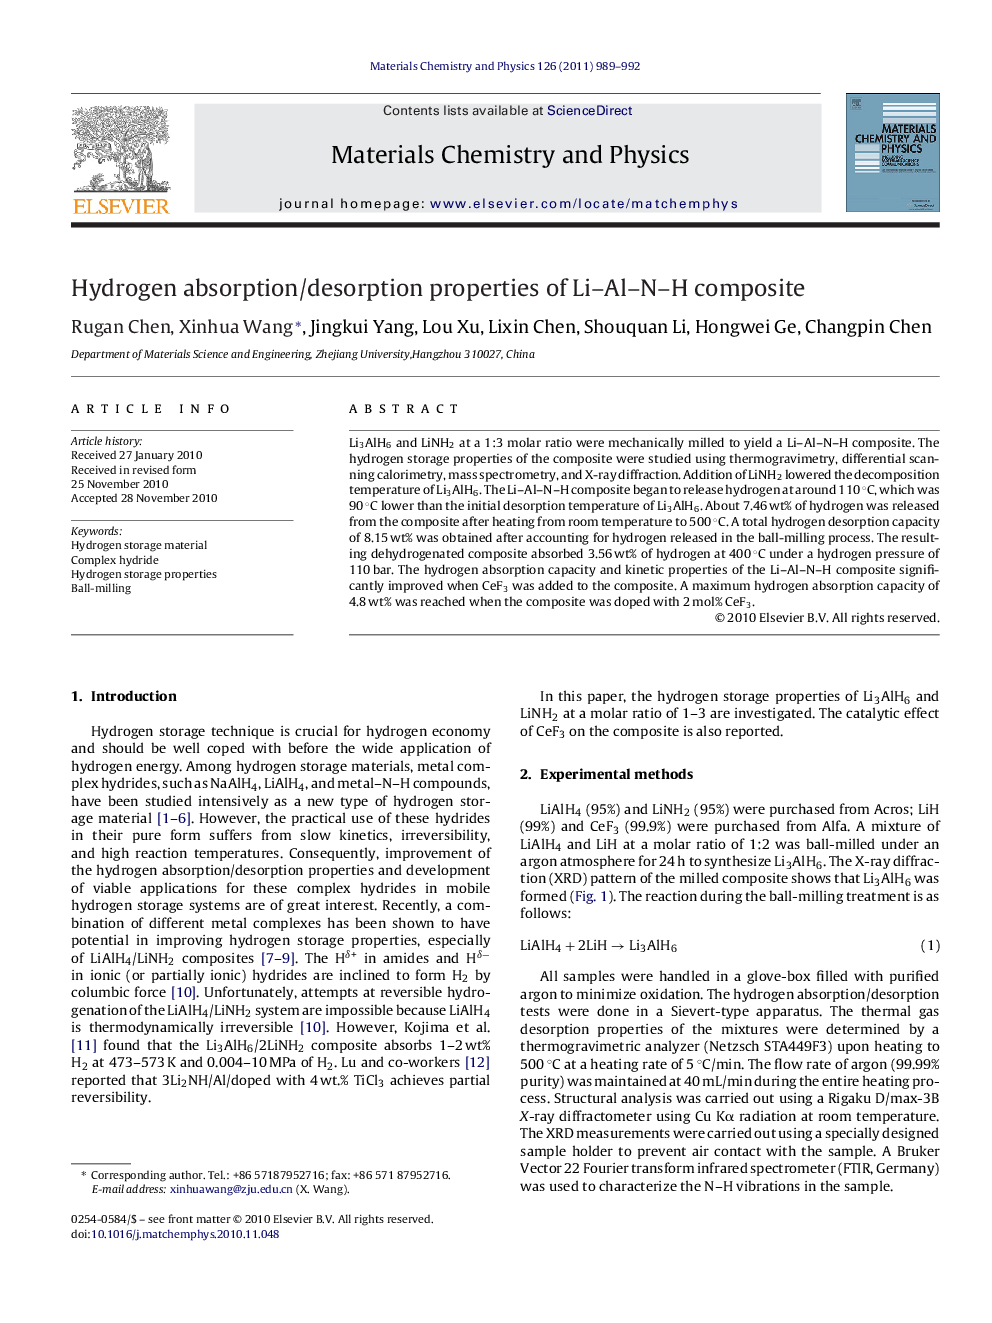 Hydrogen absorption/desorption properties of Li–Al–N–H composite